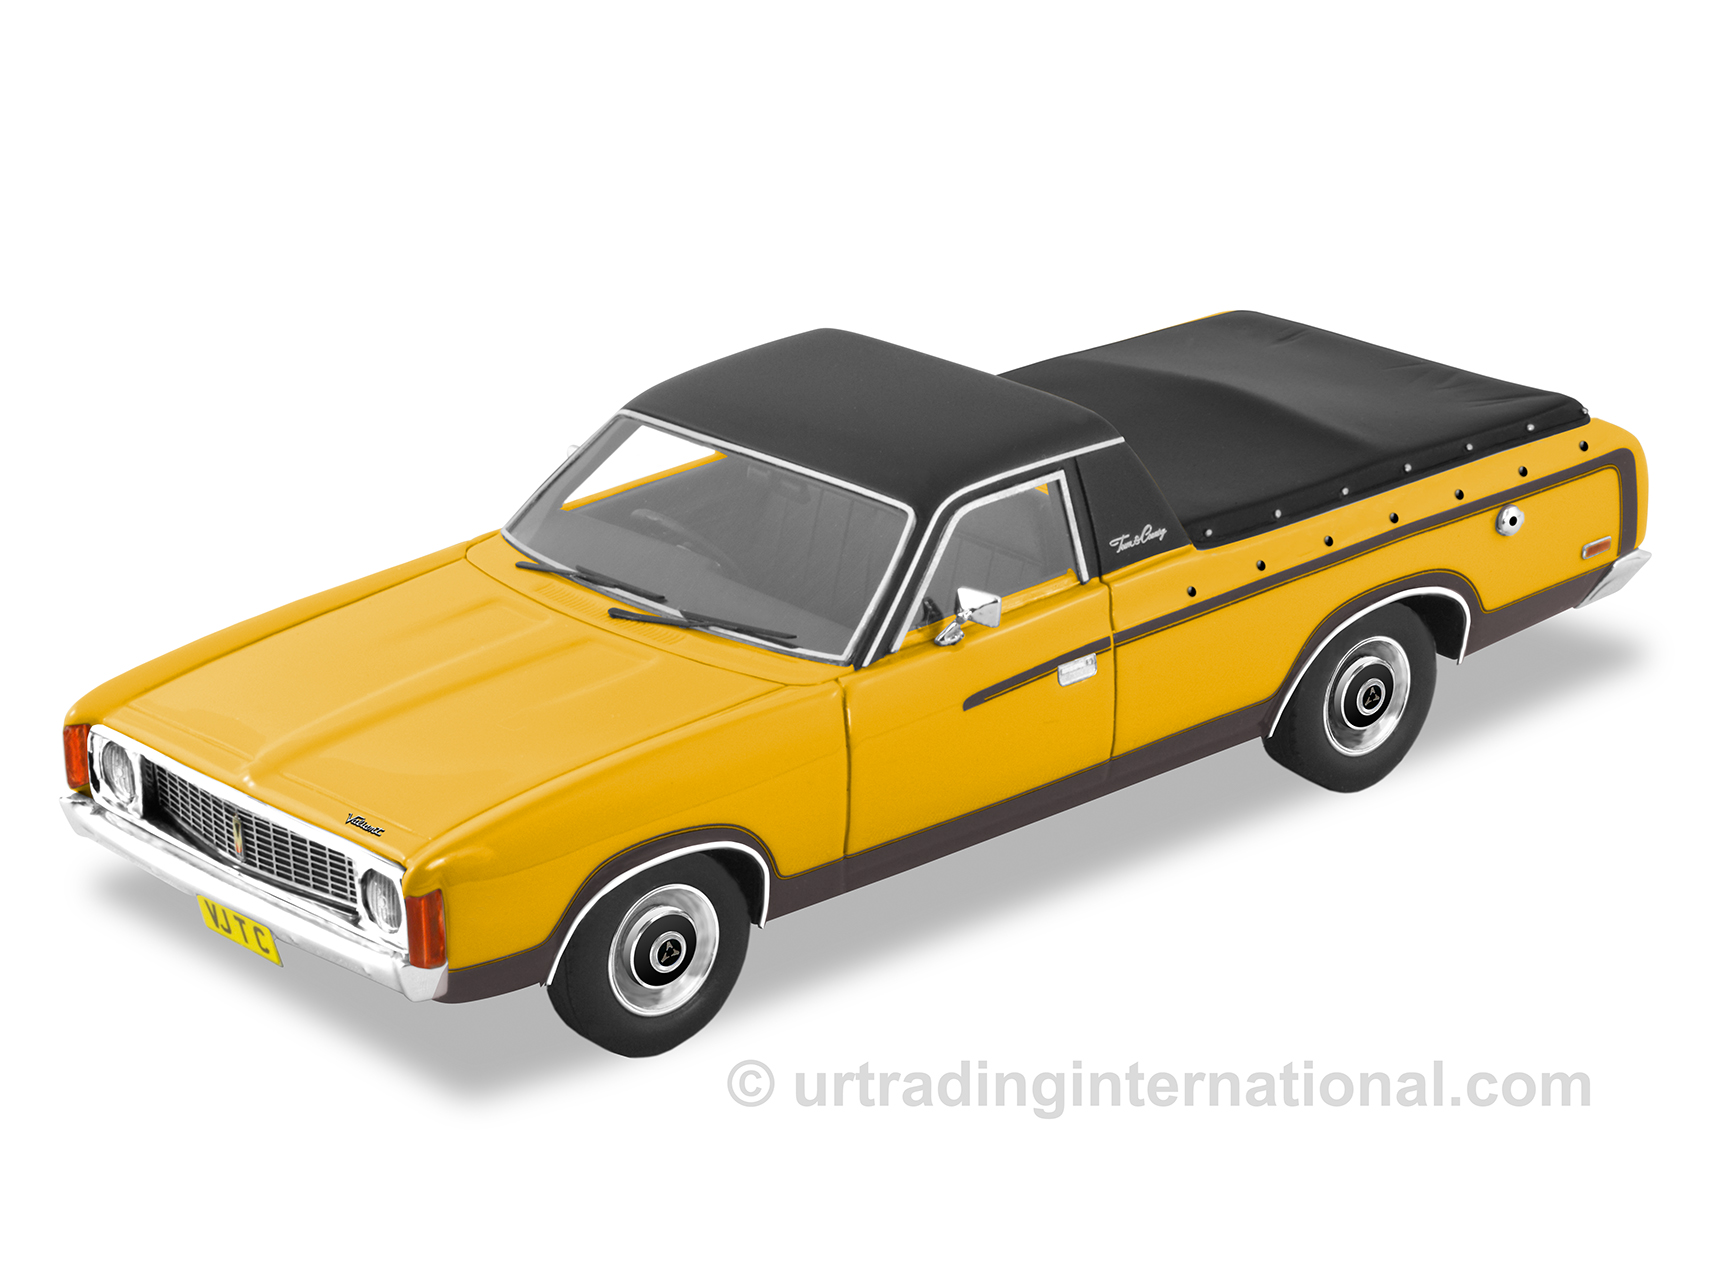 1973 Chrysler Valiant VJ Town & Country Ute – Sunfire